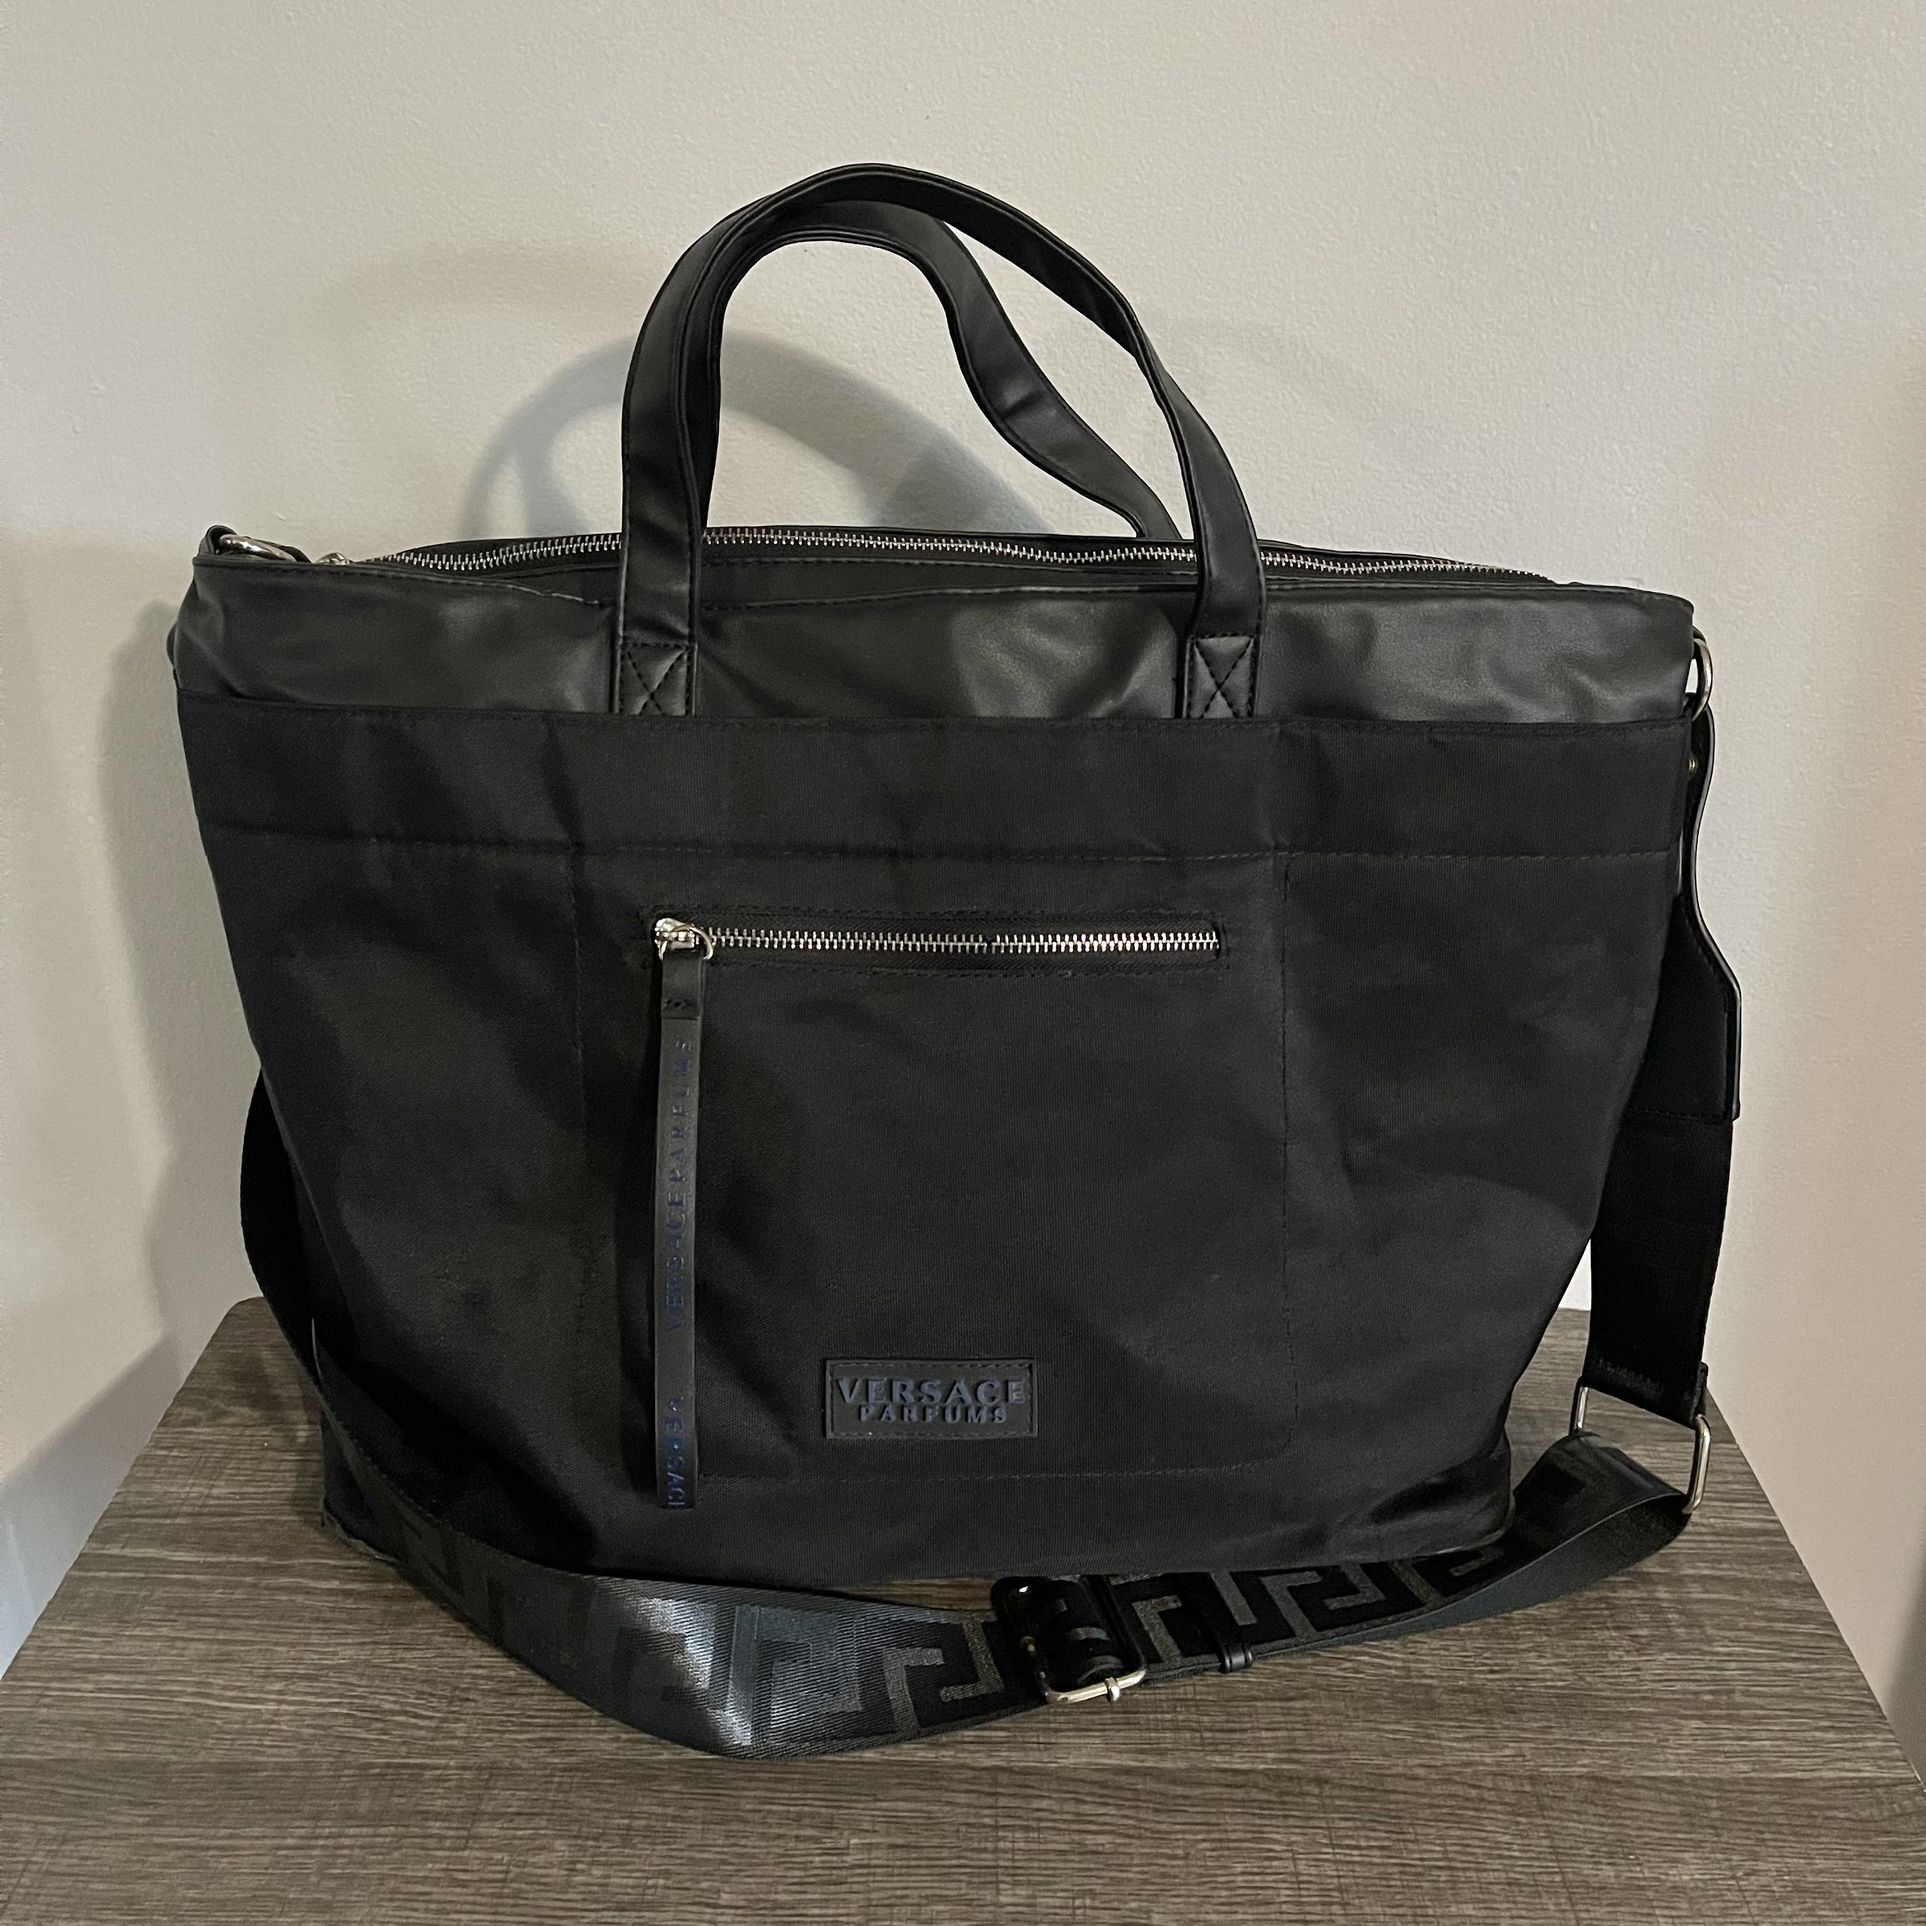 Versace Parfurms Large Black Weekender Tote Travel Bag 